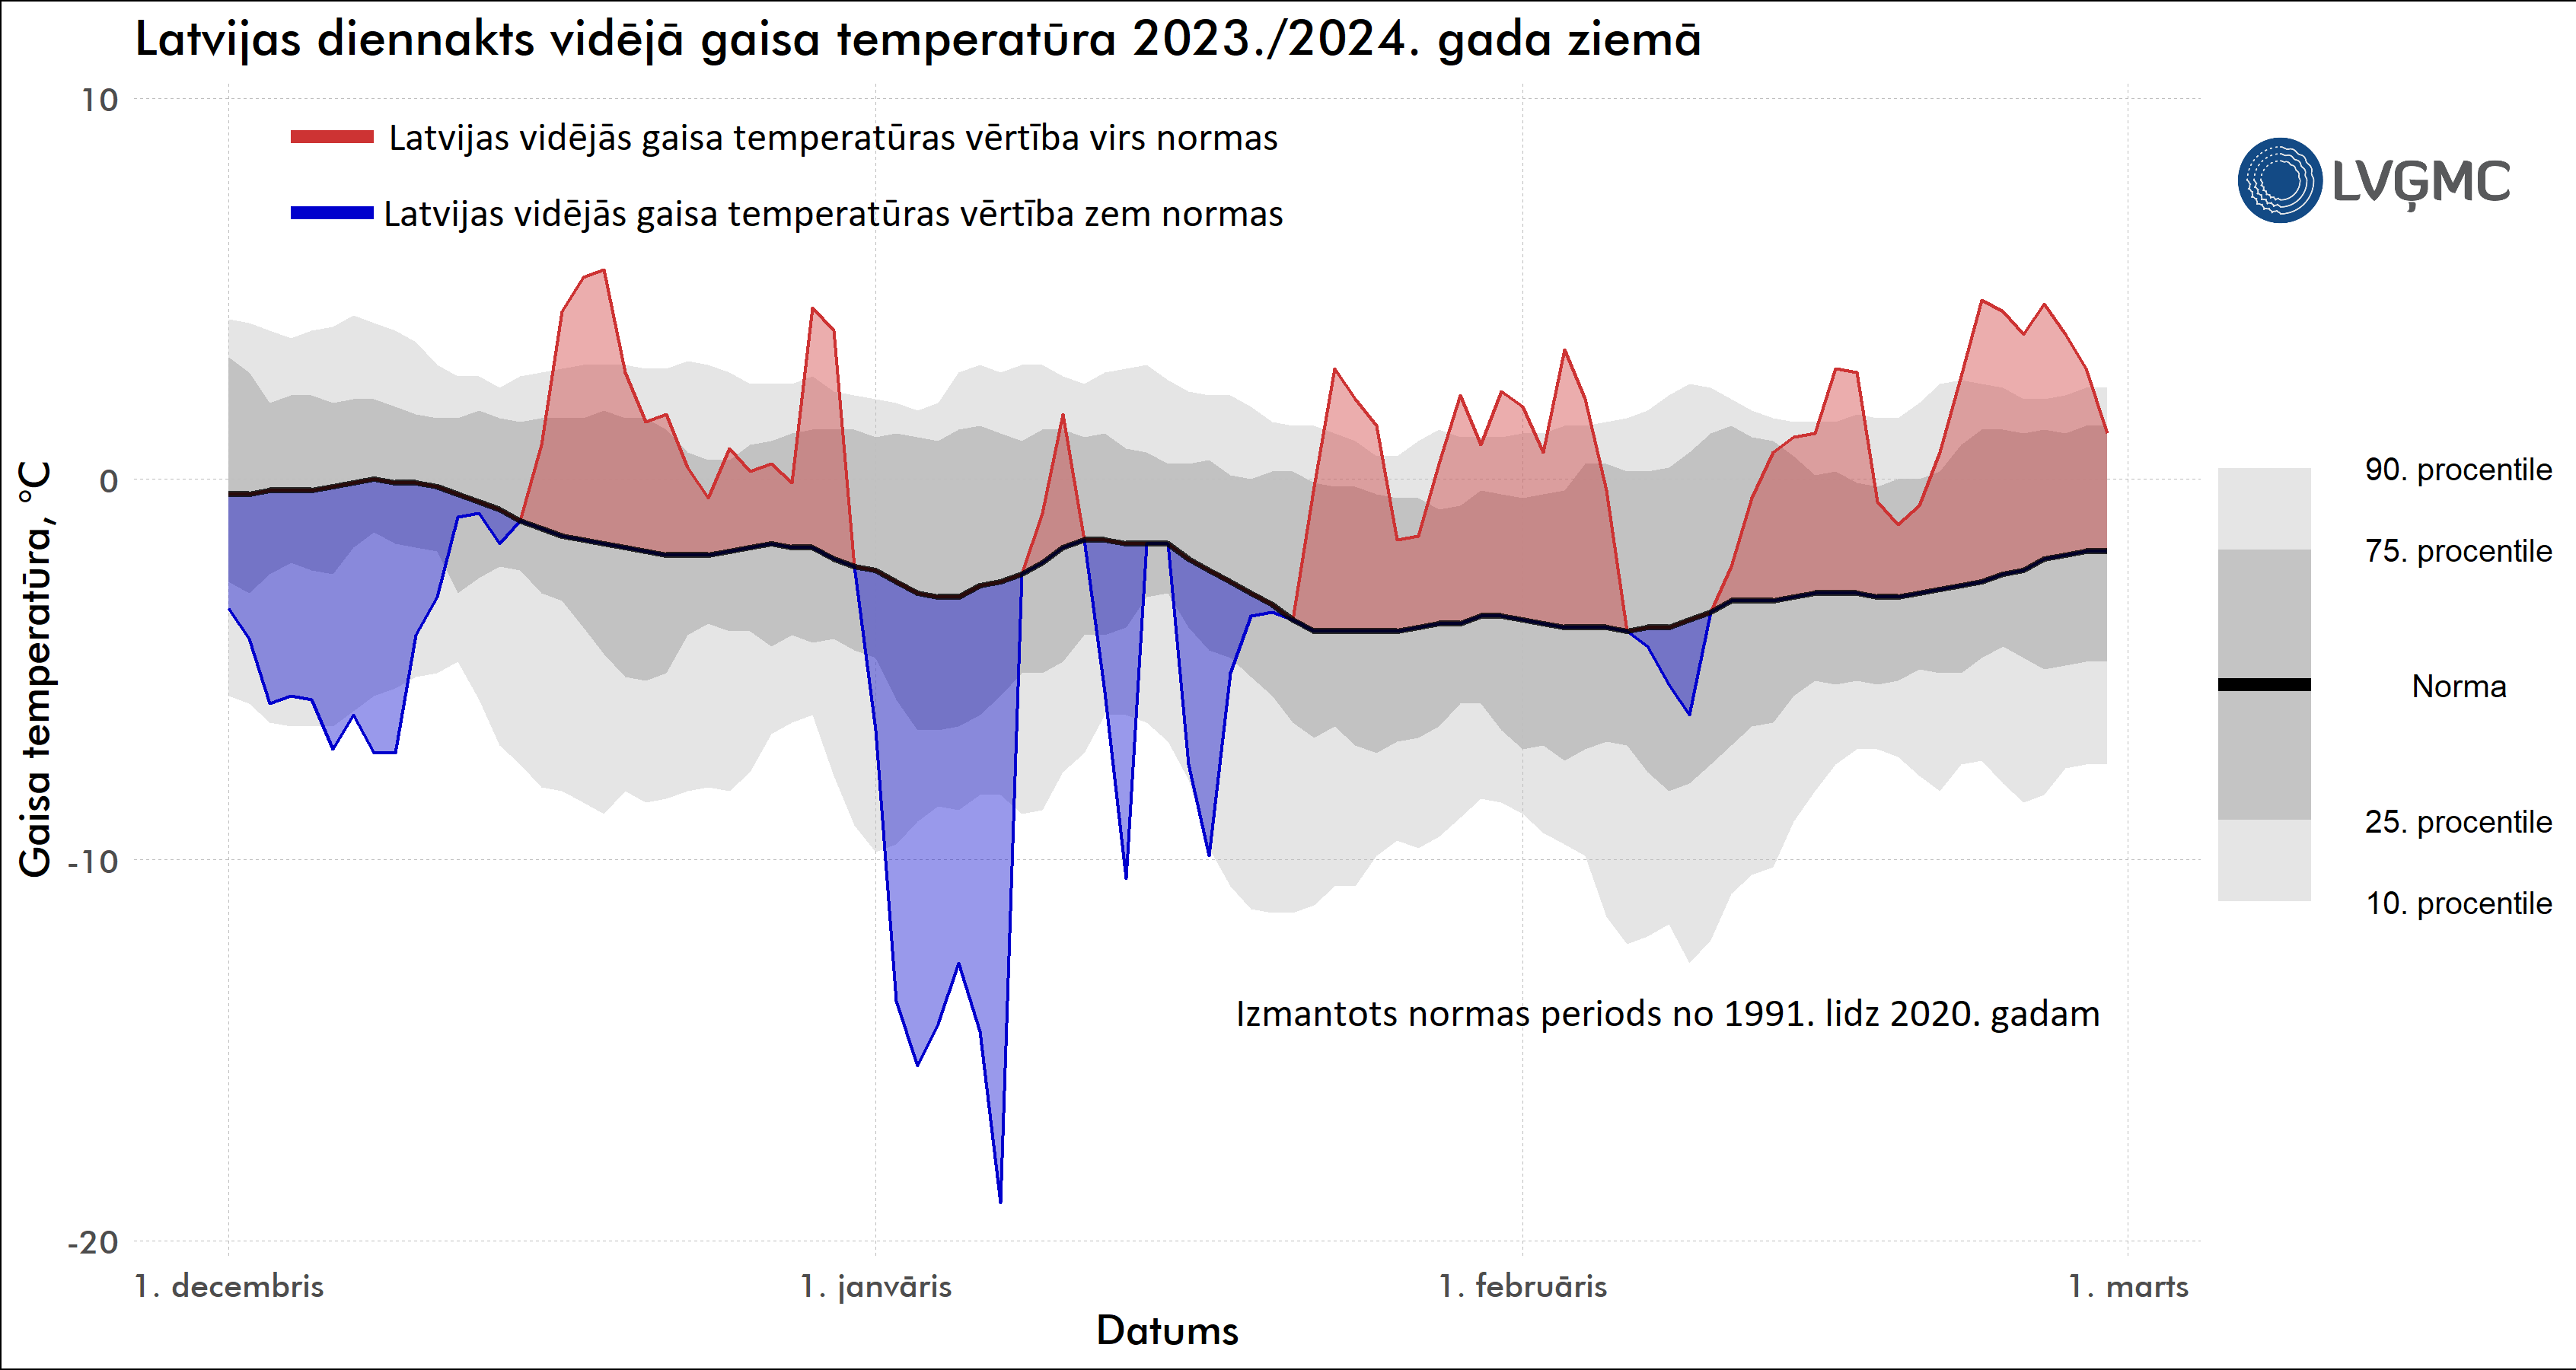 Latvijas diennakts vidējā gaisa temperatūra 2023./2024. gada ziemā, °C